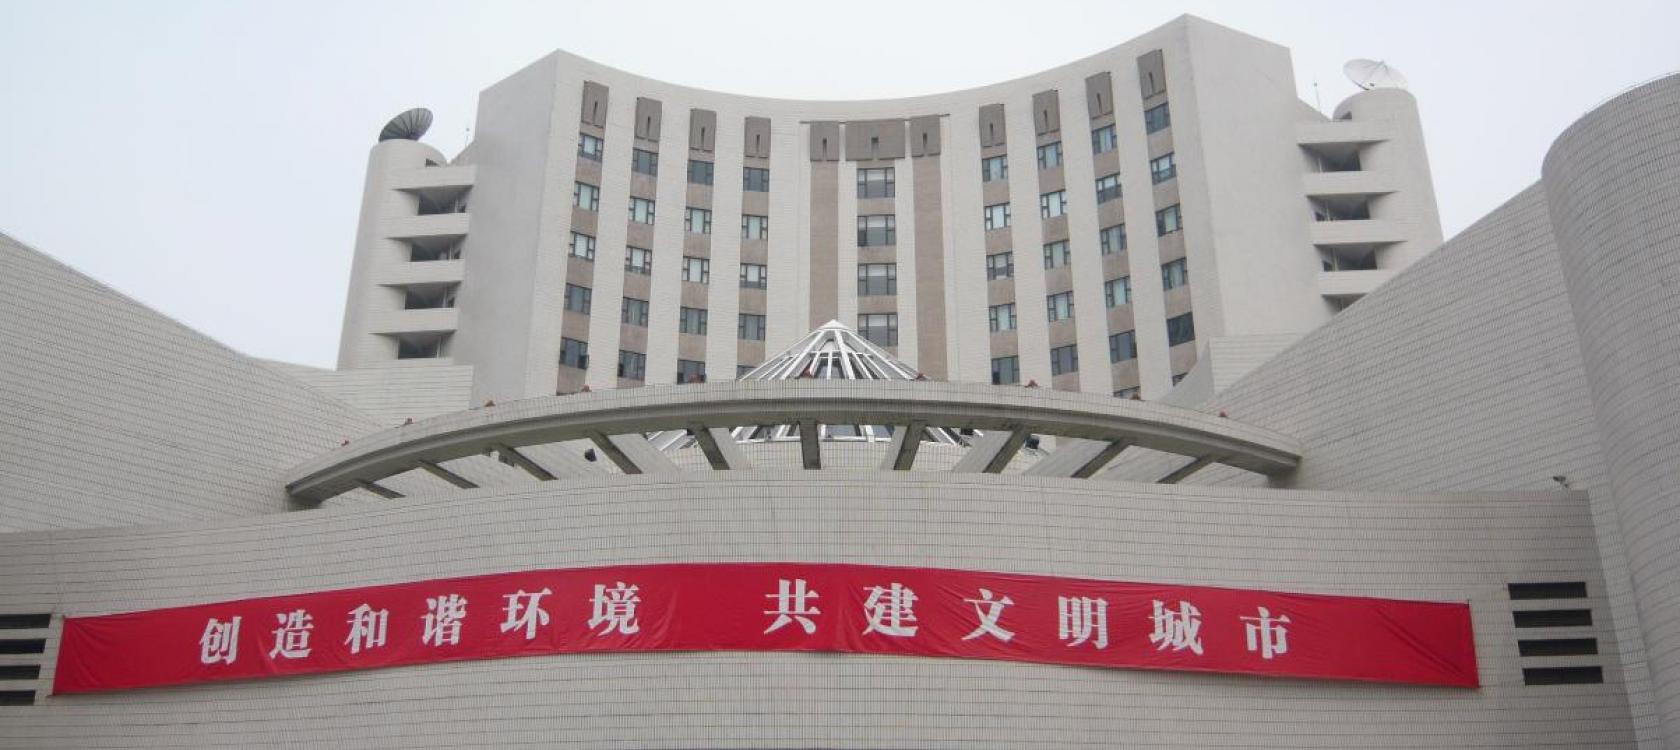 éhabilitation énergétique des bâtiments administratifs de Wuhan